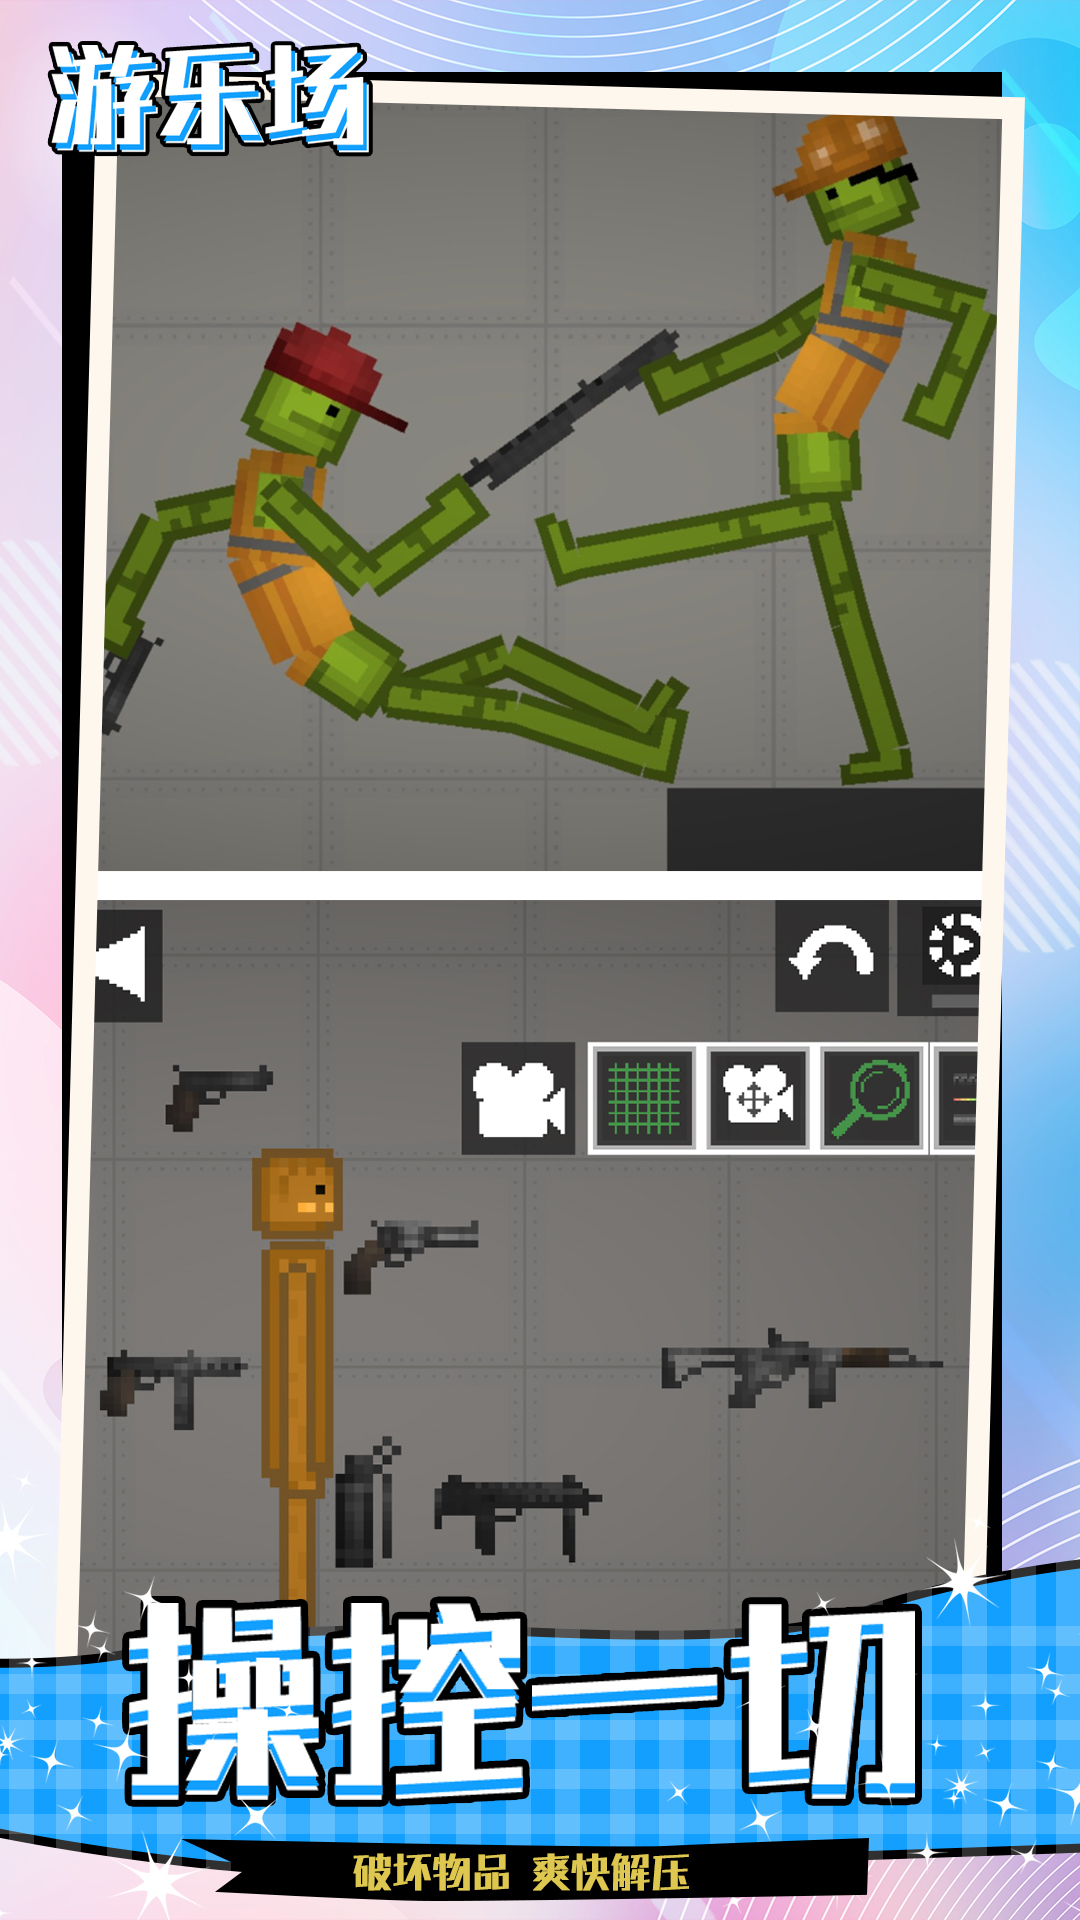 人类沙盒游乐场-欢乐甜瓜模拟器 v1.0-基于物理碰撞特性的动作游戏截图1